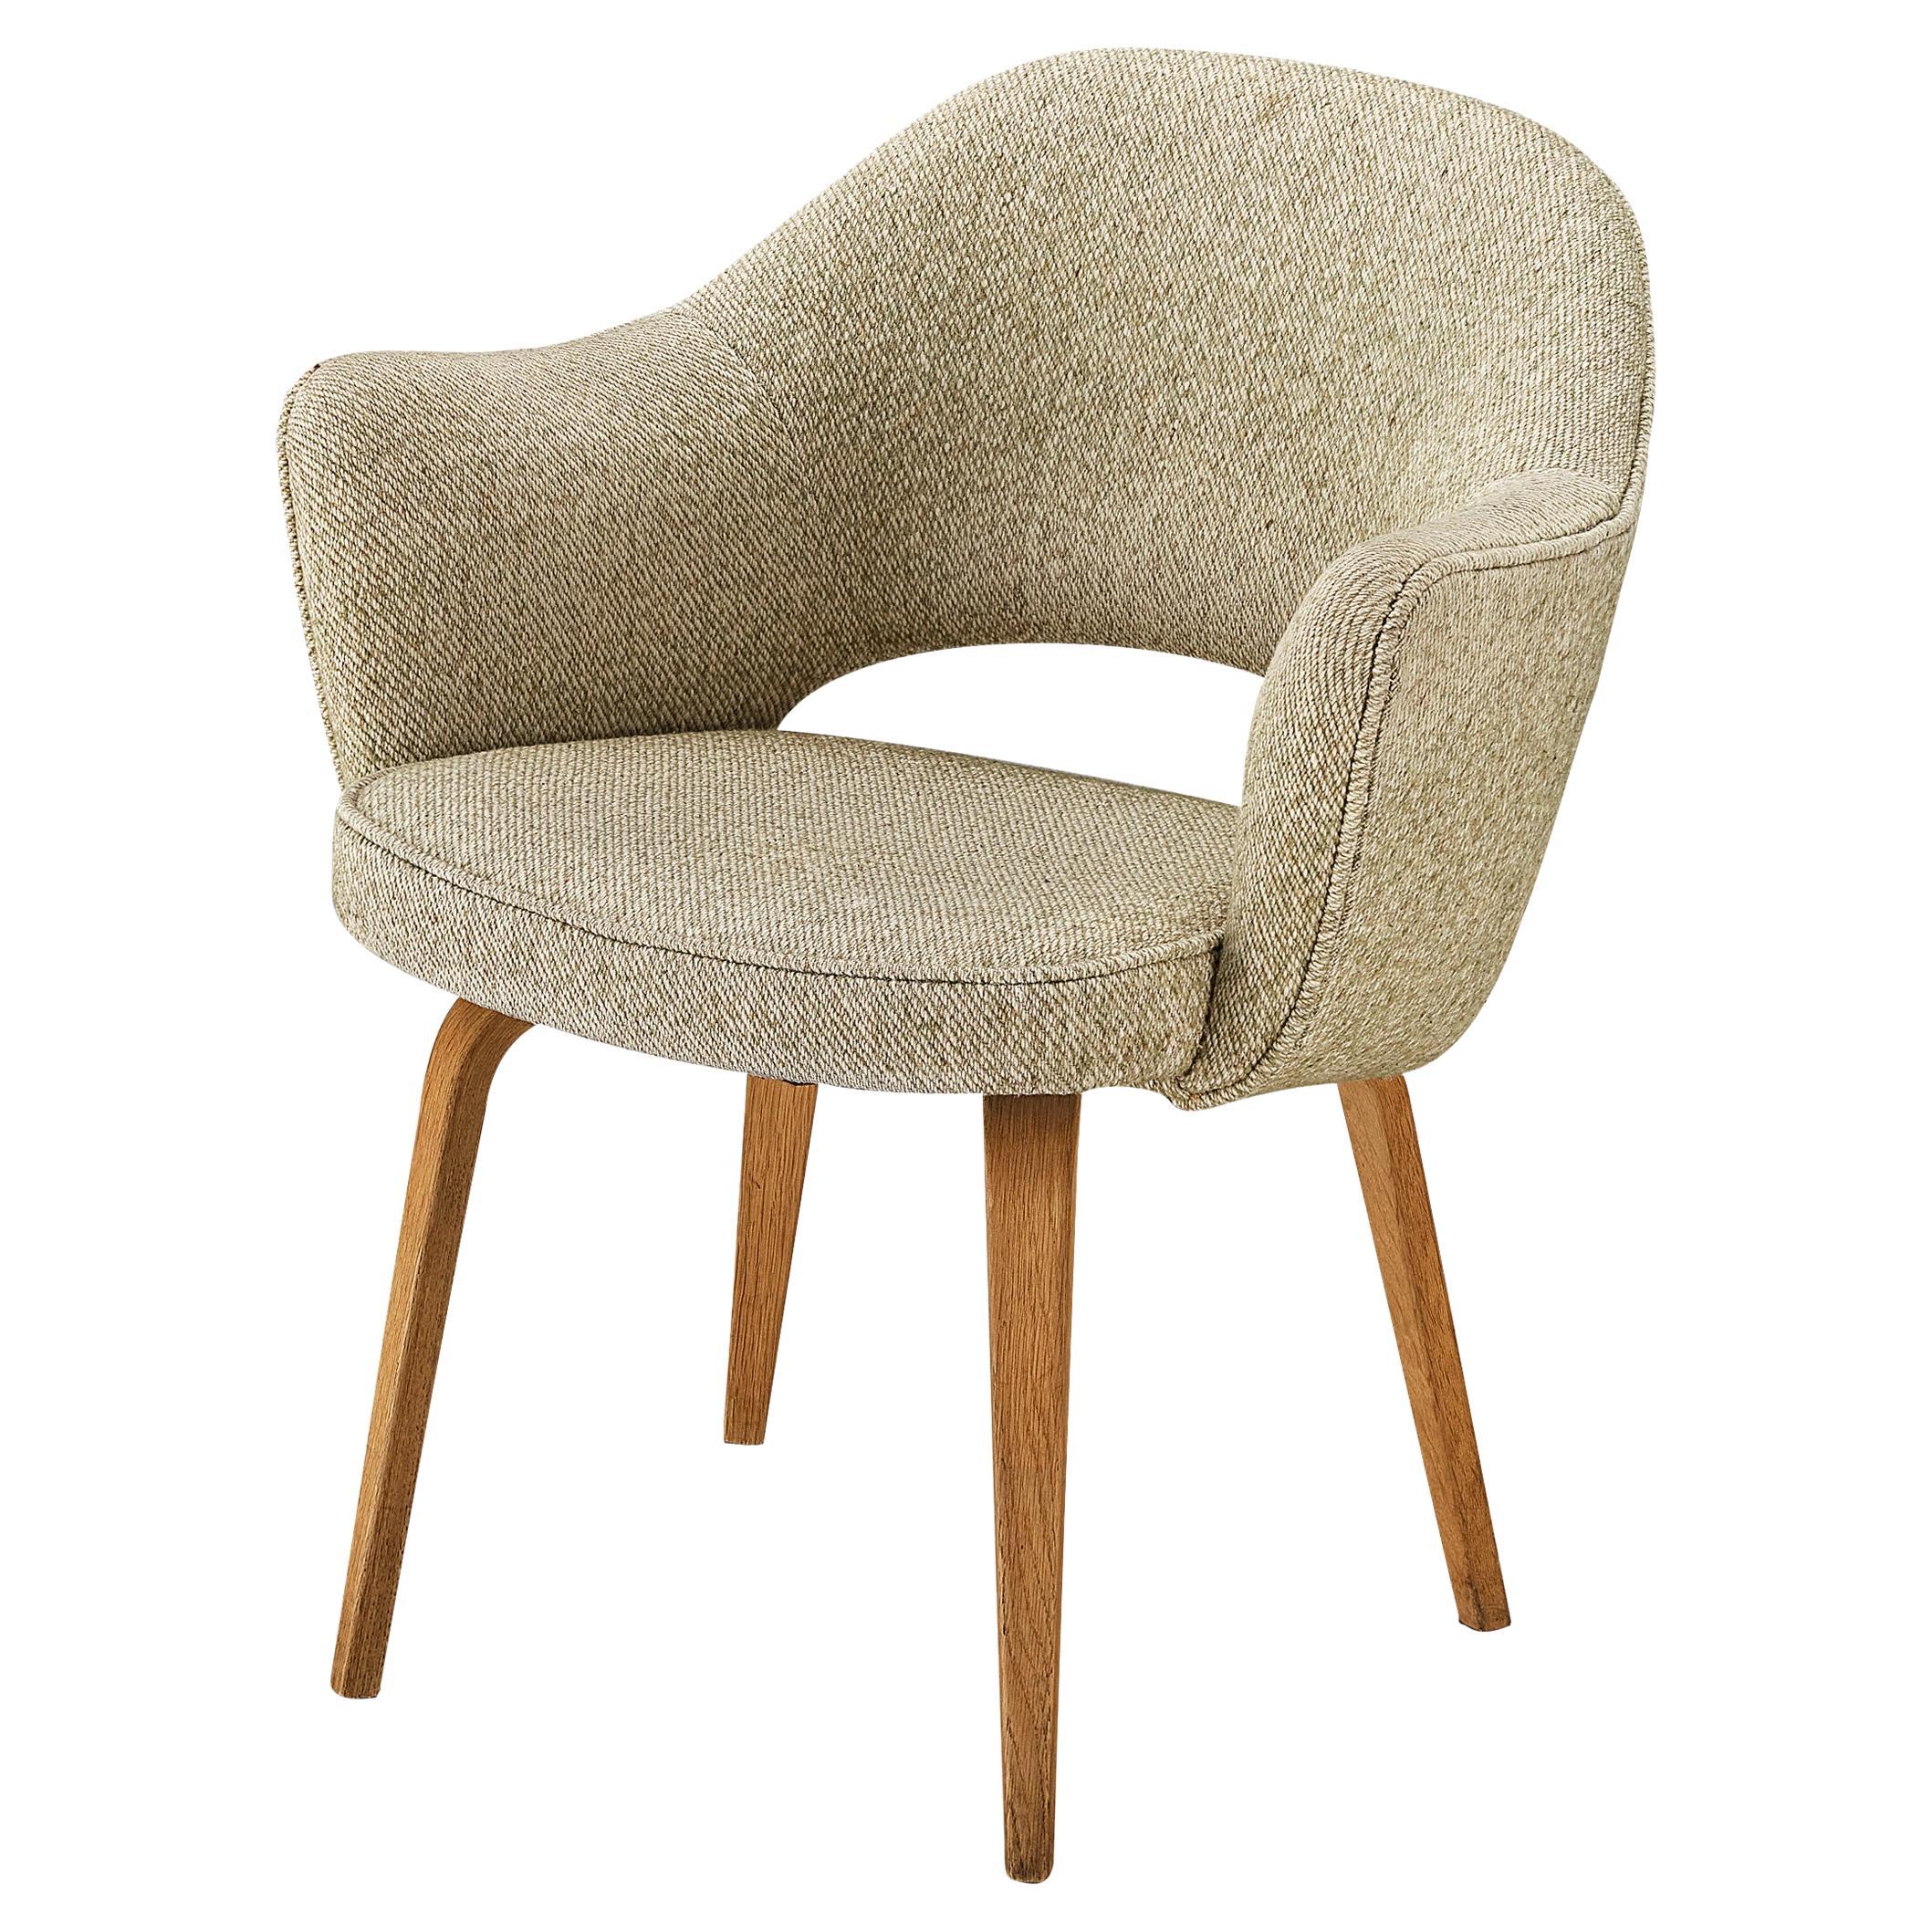 Can you change Eero Saarinen chair legs?